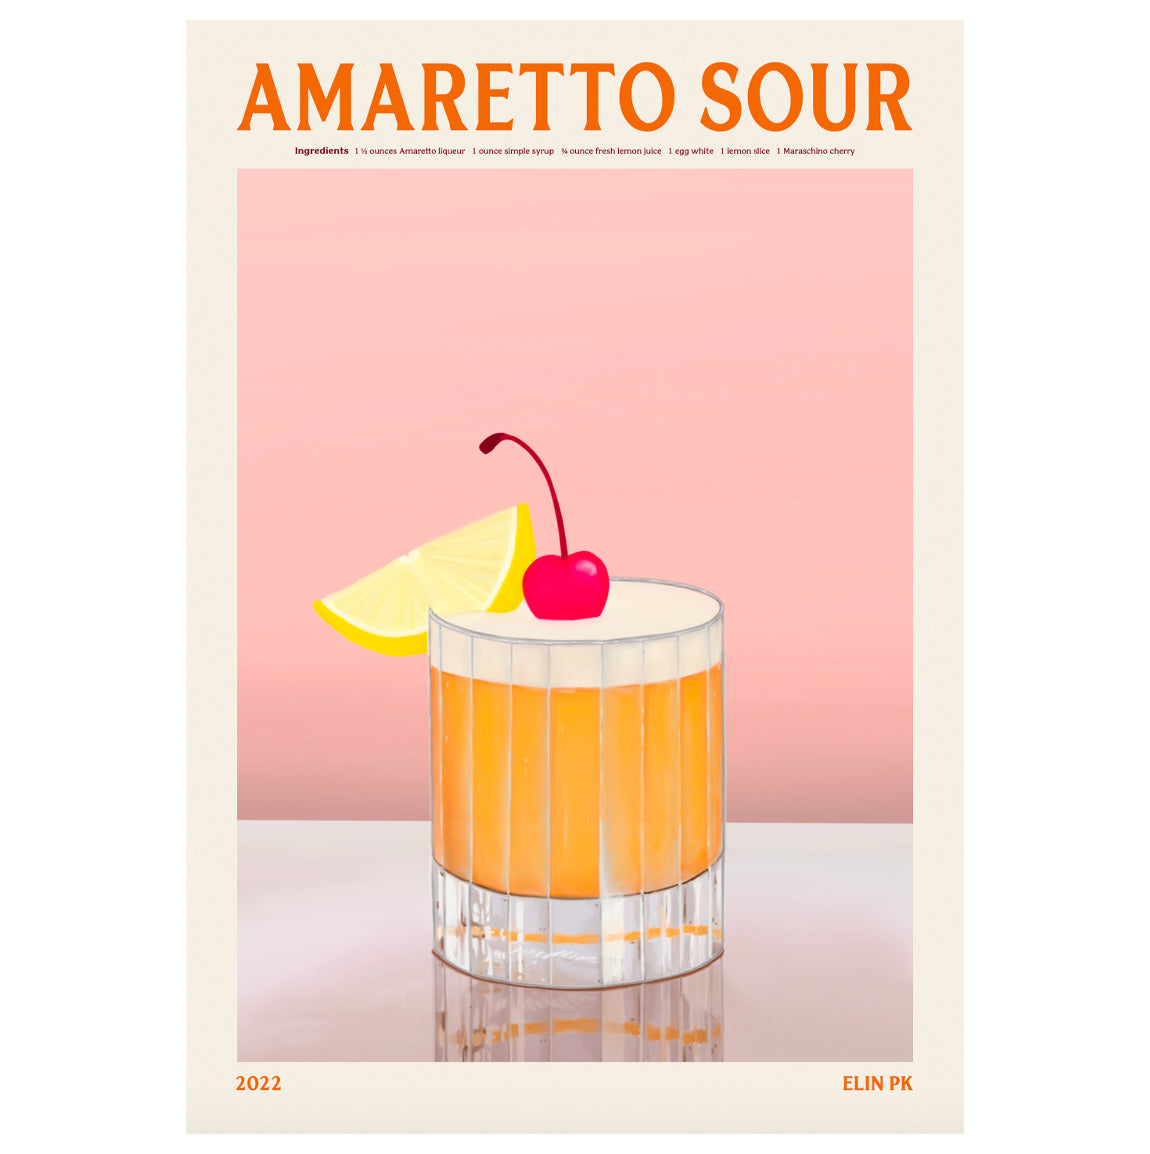 Amaretto Sour Print - By Elin PK